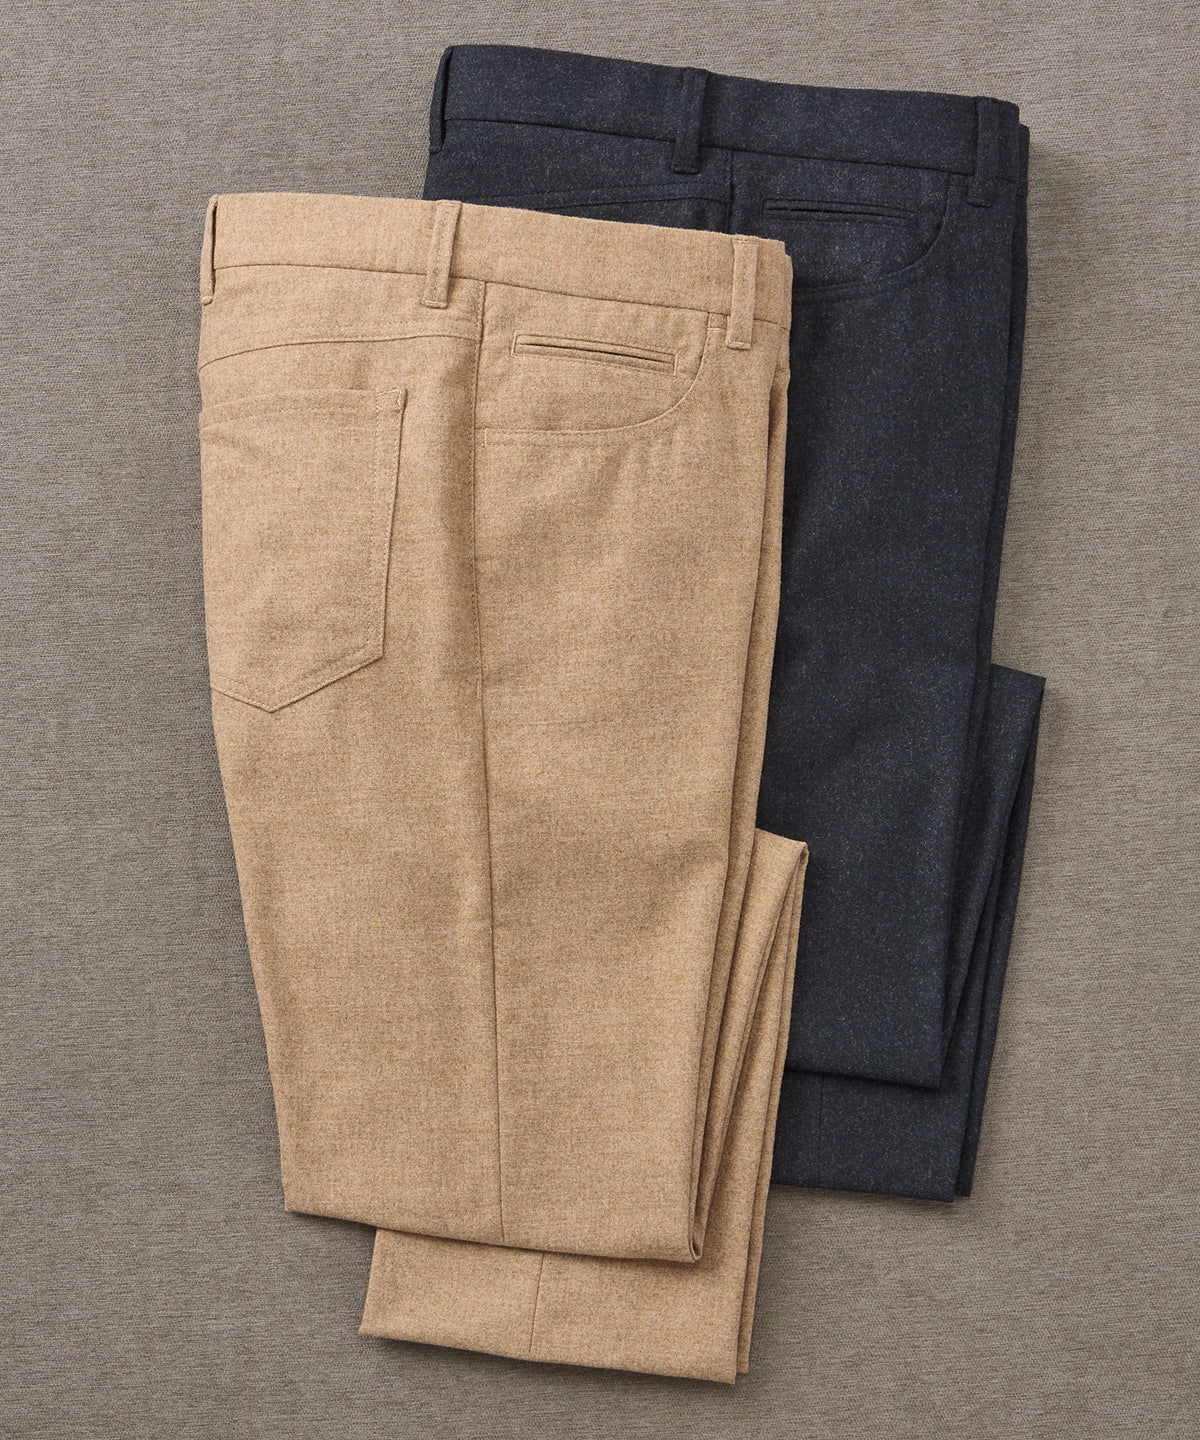 Westport Black Micro Donegal 5-Pocket Pant, Men's Big & Tall